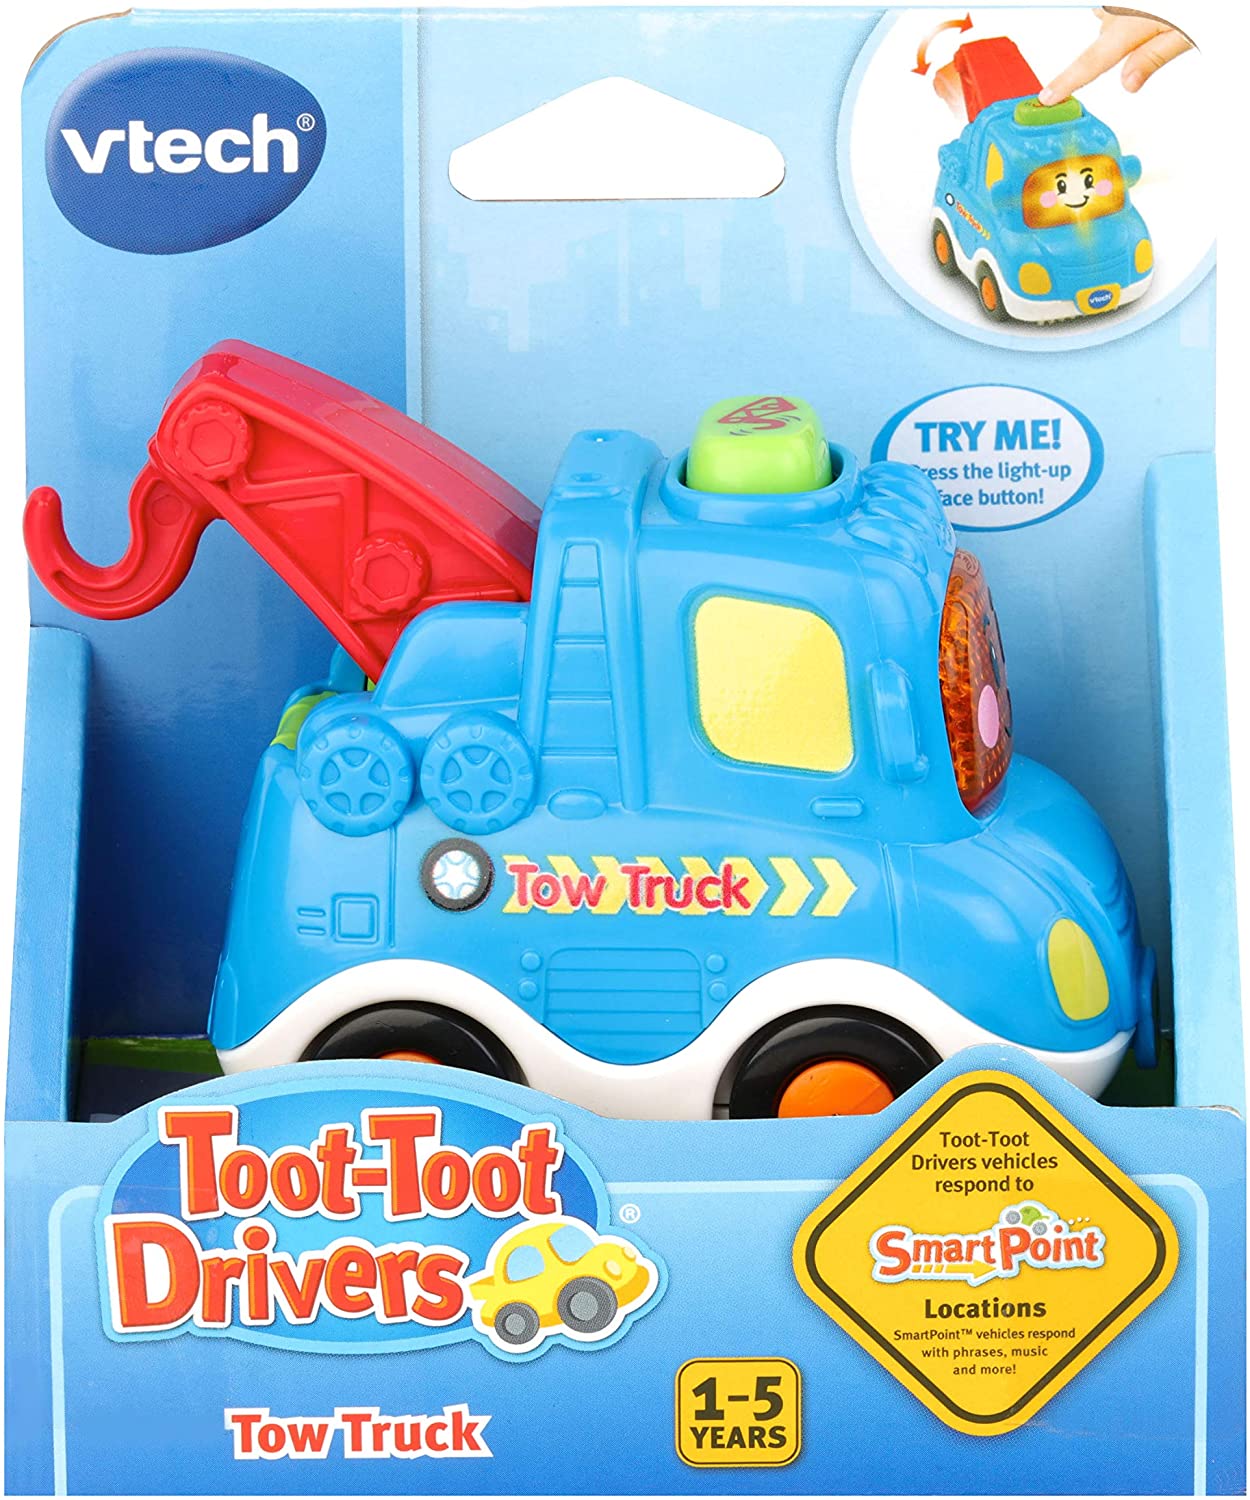 Vtech Toot Toot Tow Truck (80-516603)